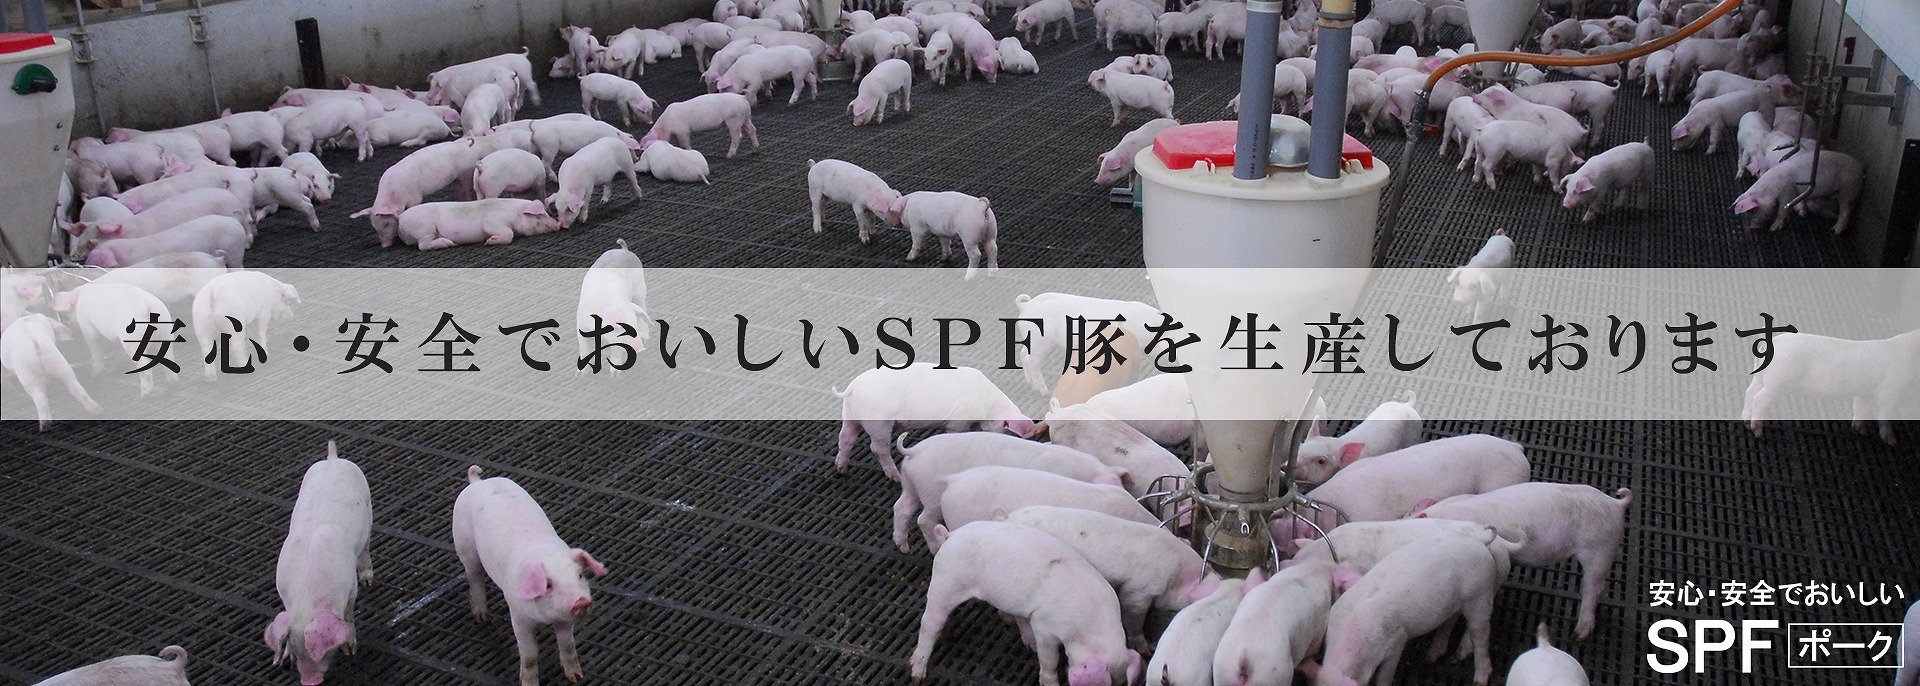 安心・安全でおいしいSPF豚を生産しております